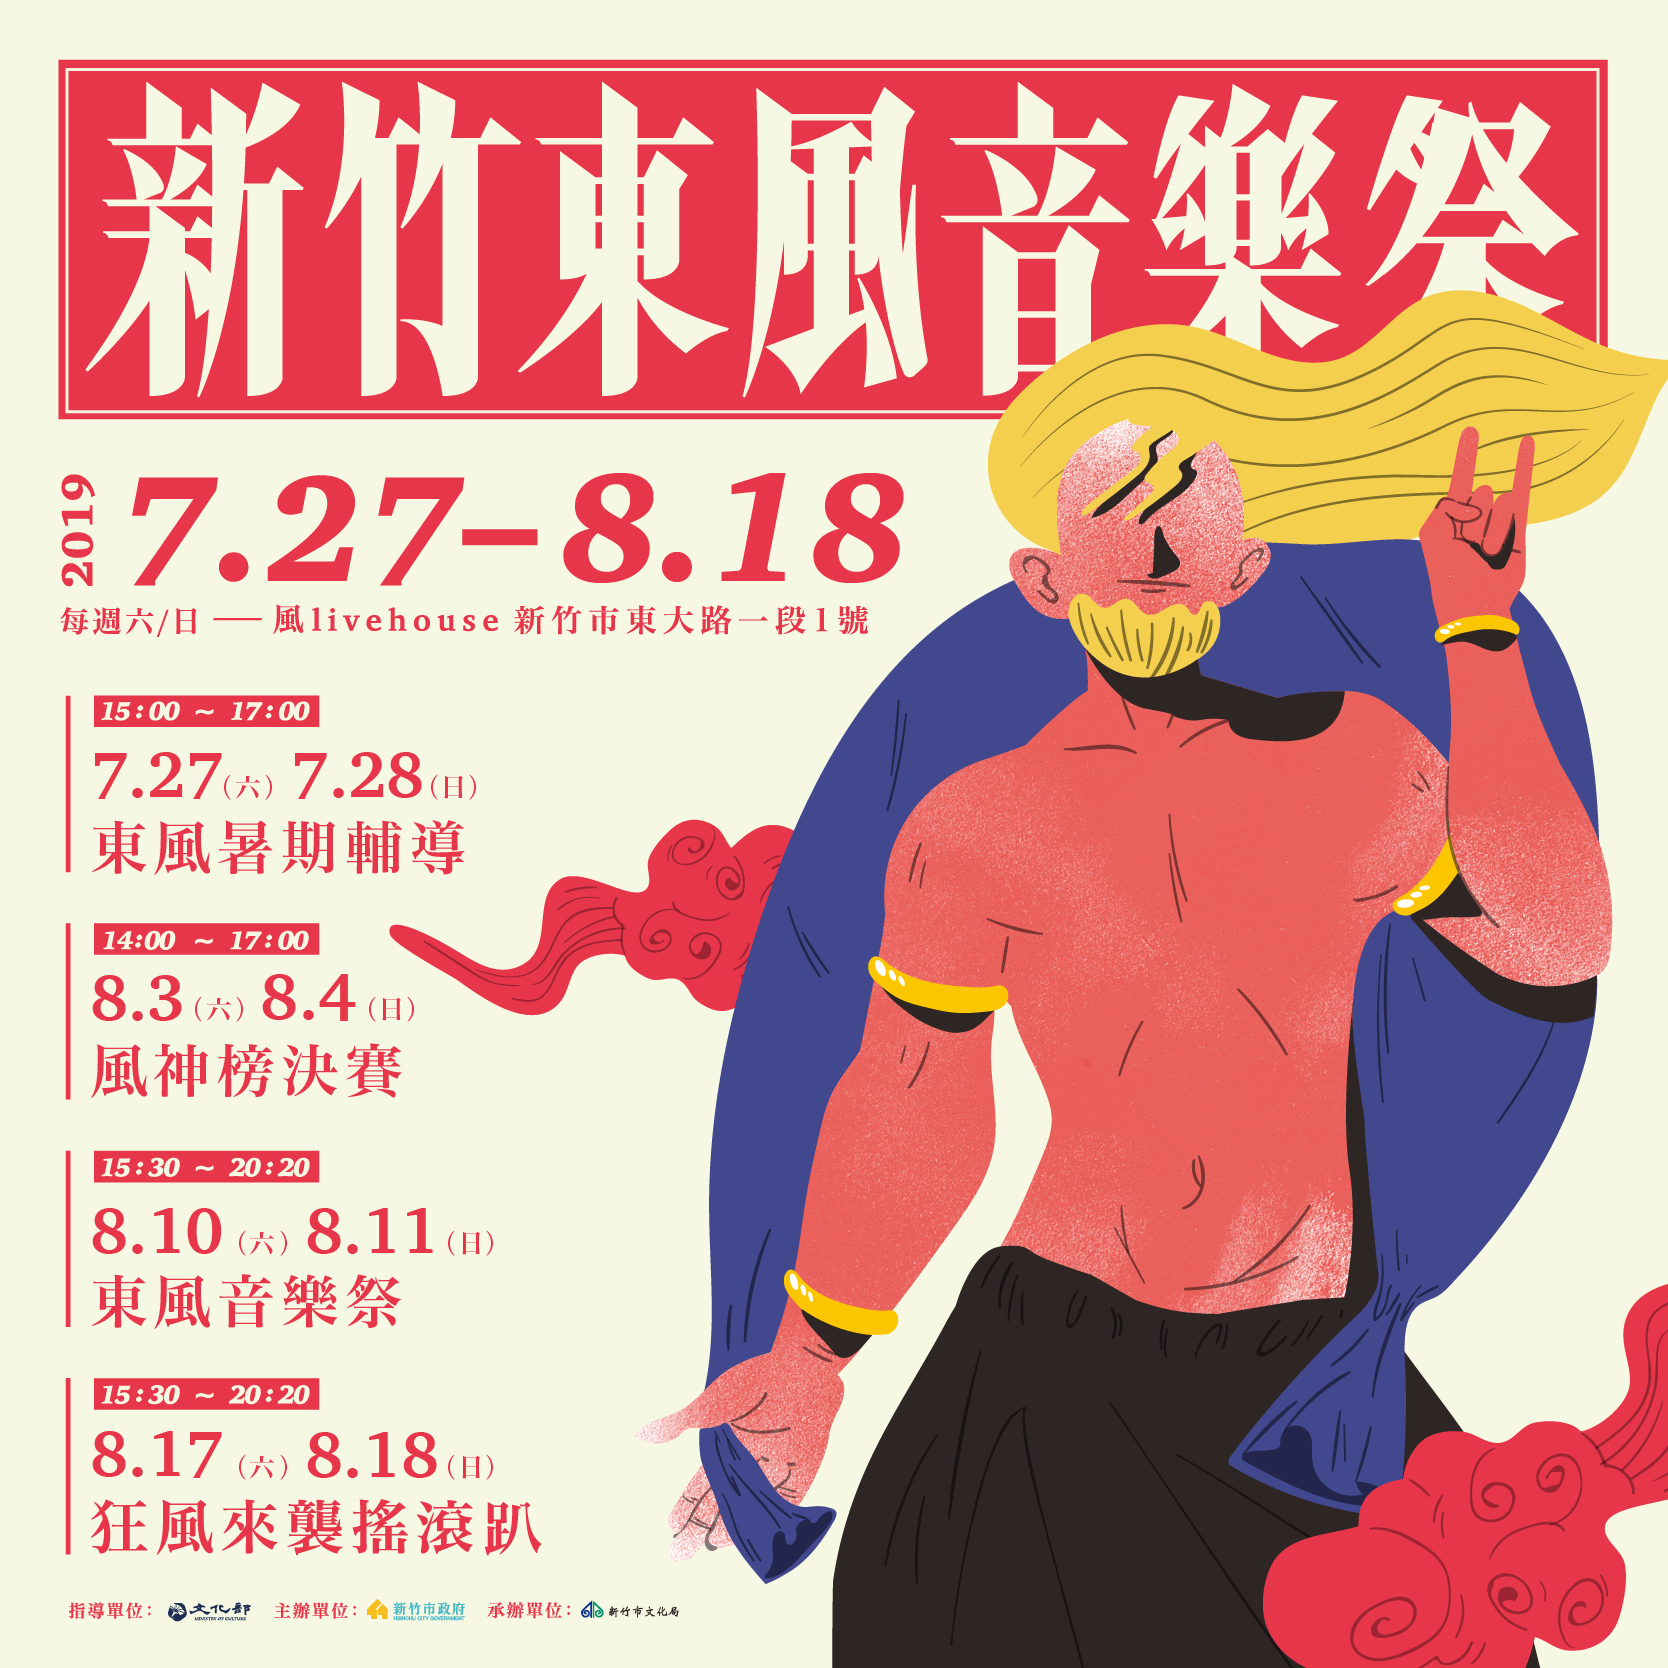 「2019年新竹東風音樂祭 」宣傳文宣